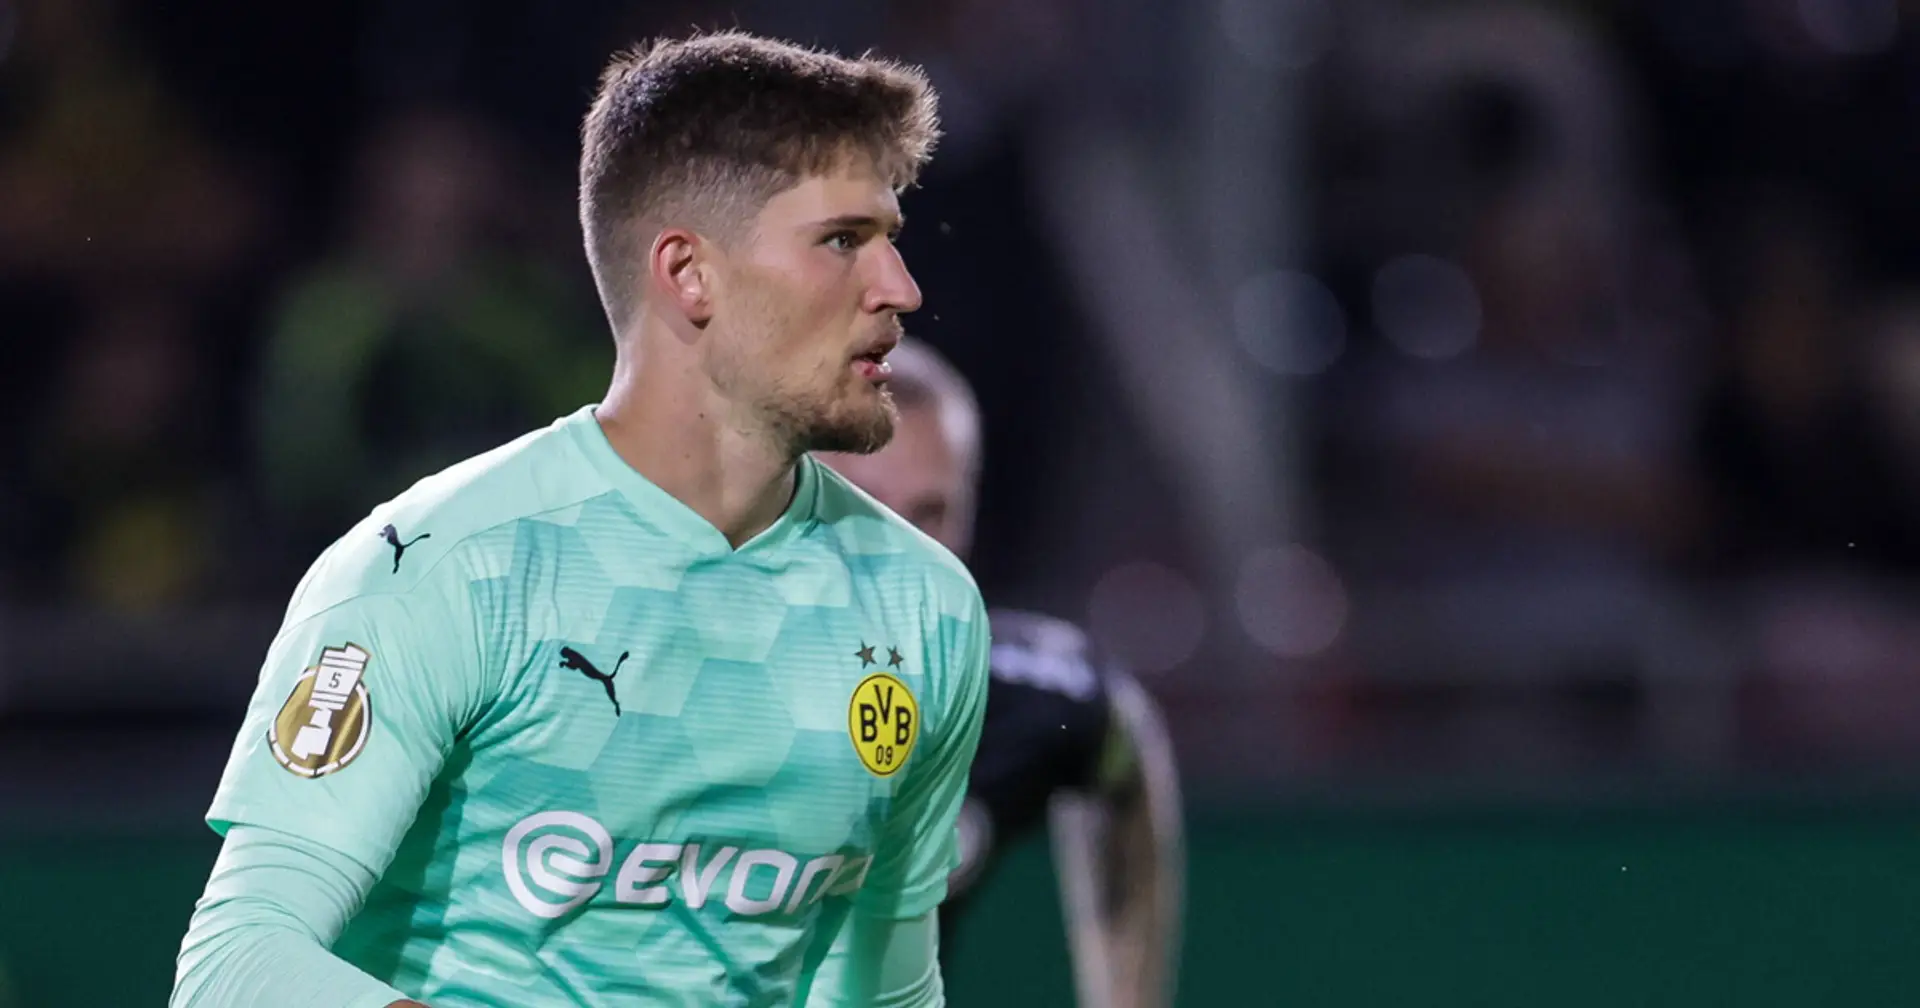 Gregor Kobel über den 3:0-Sieg vs. Wiesbaden: "Hinten steht die Null, das ist das Wichtigste"